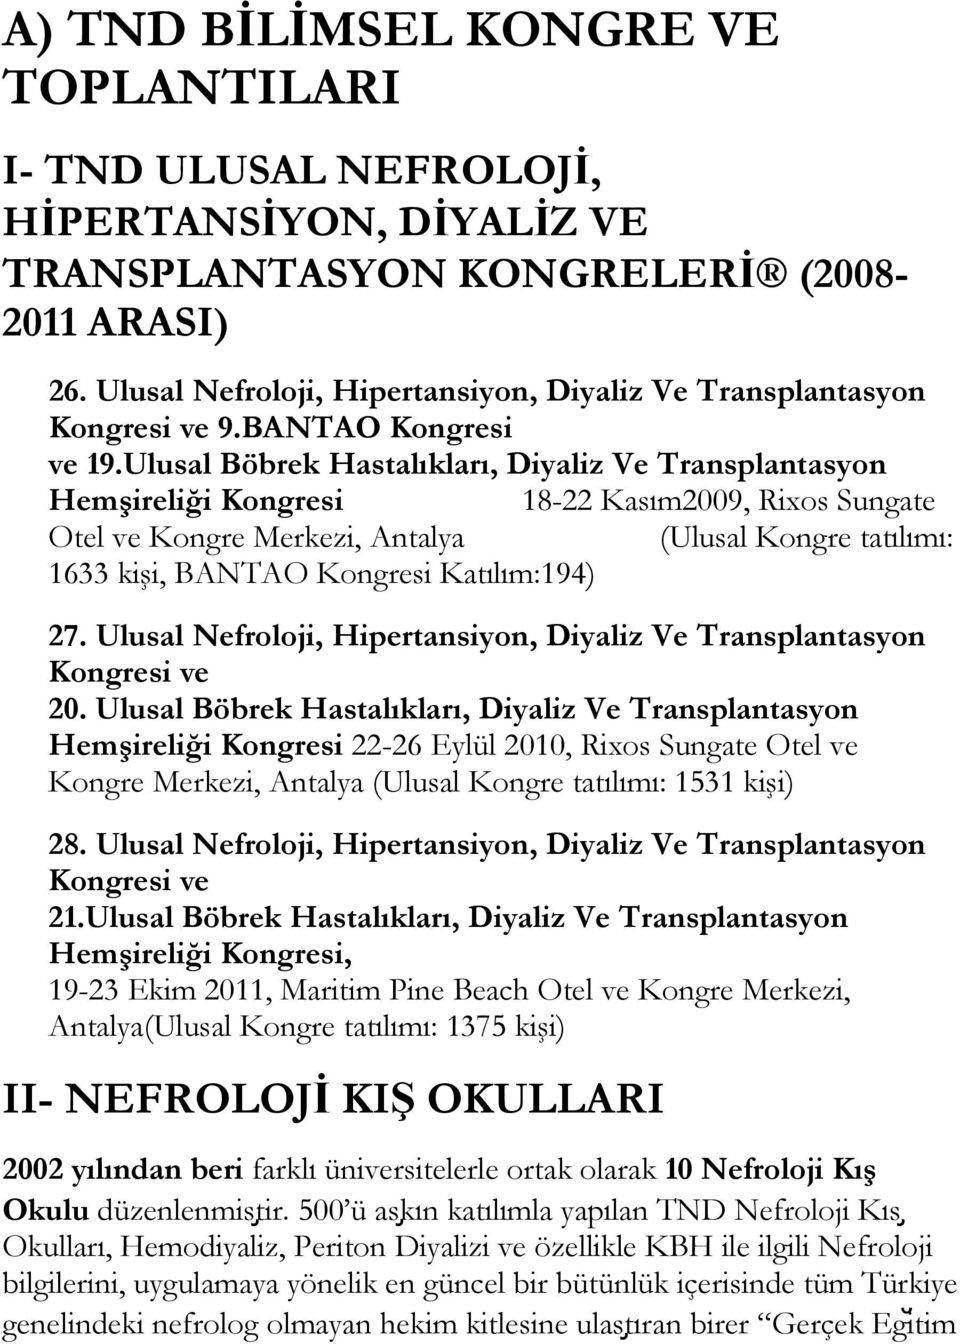 Ulusal Böbrek Hastalıkları, Diyaliz Ve Transplantasyon Hemşireliği Kongresi 18-22 Kasım2009, Rixos Sungate Otel ve Kongre Merkezi, Antalya (Ulusal Kongre tatılımı: 1633 kişi, BANTAO Kongresi